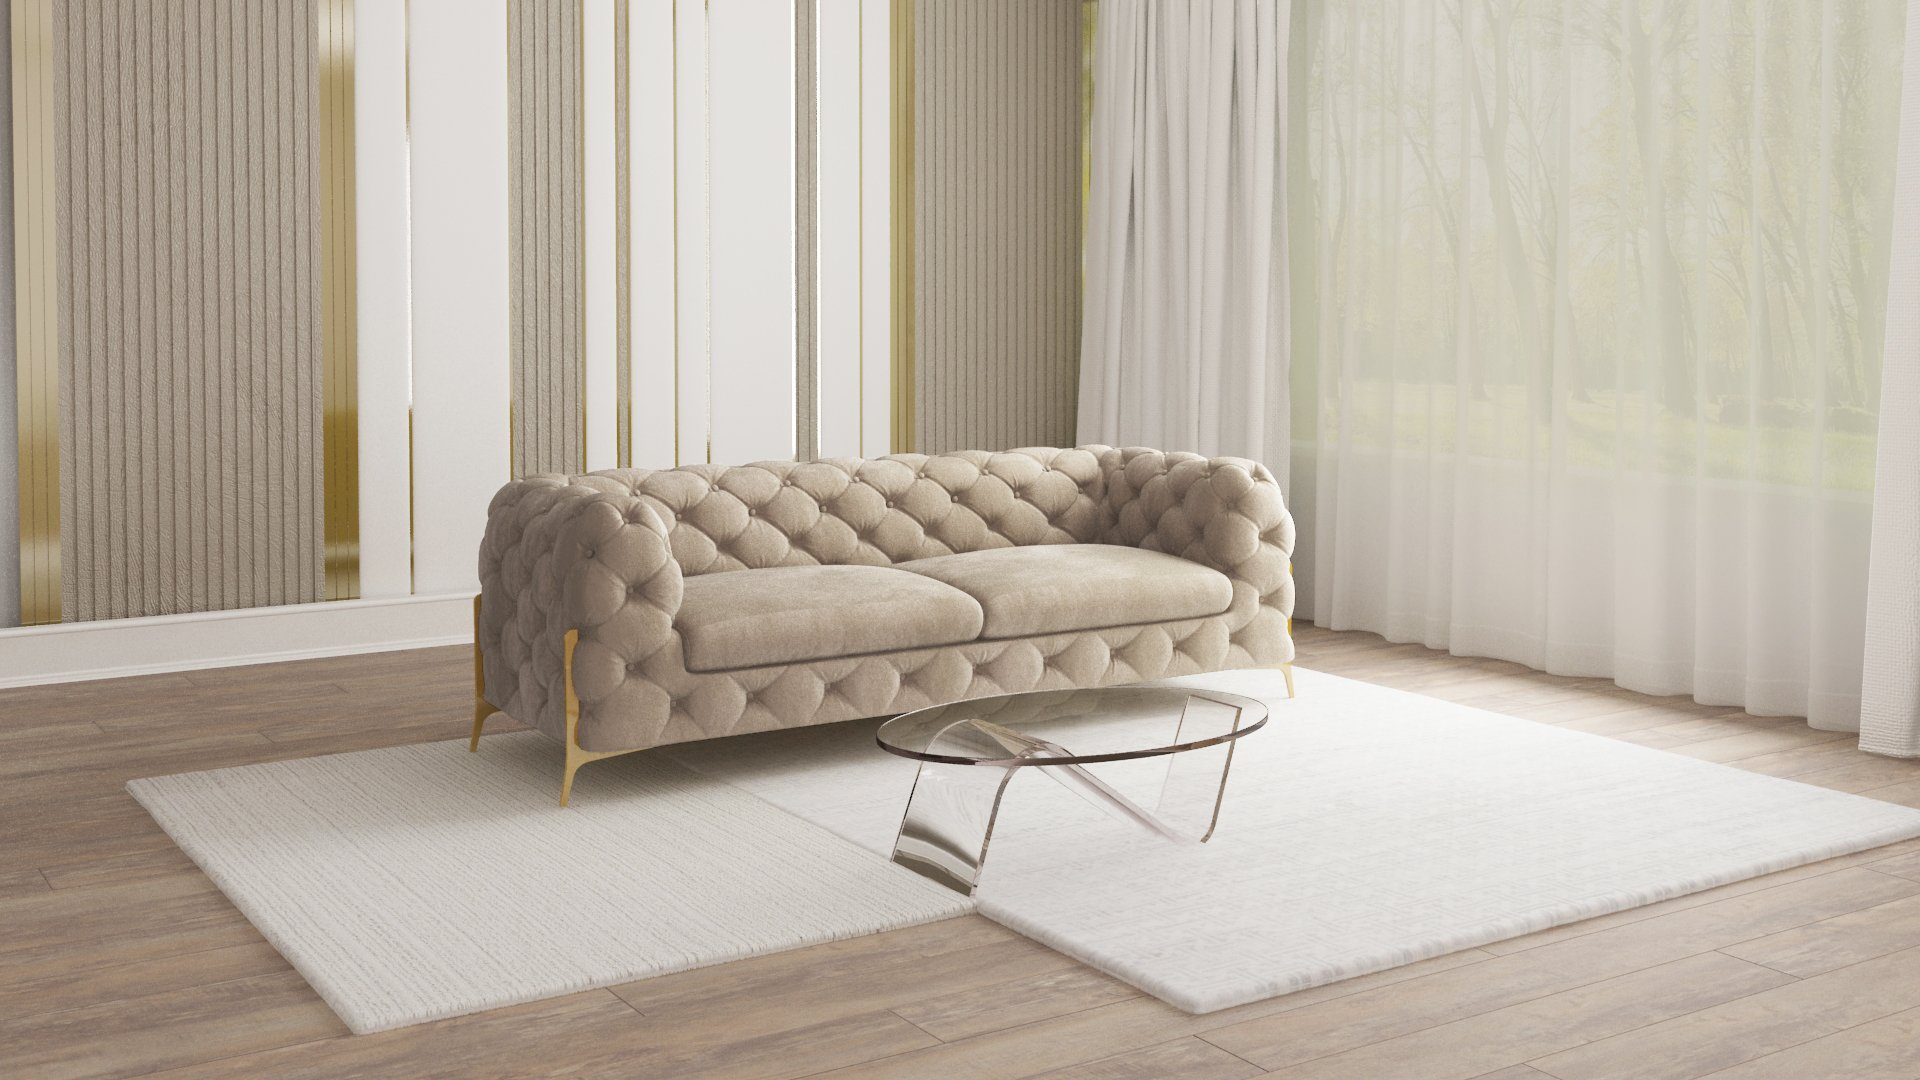 S-Style Möbel 3-Sitzer Ashley Chesterfield Sofa mit Goldene Metall Füßen, mit Wellenfederung Dunkle Creme